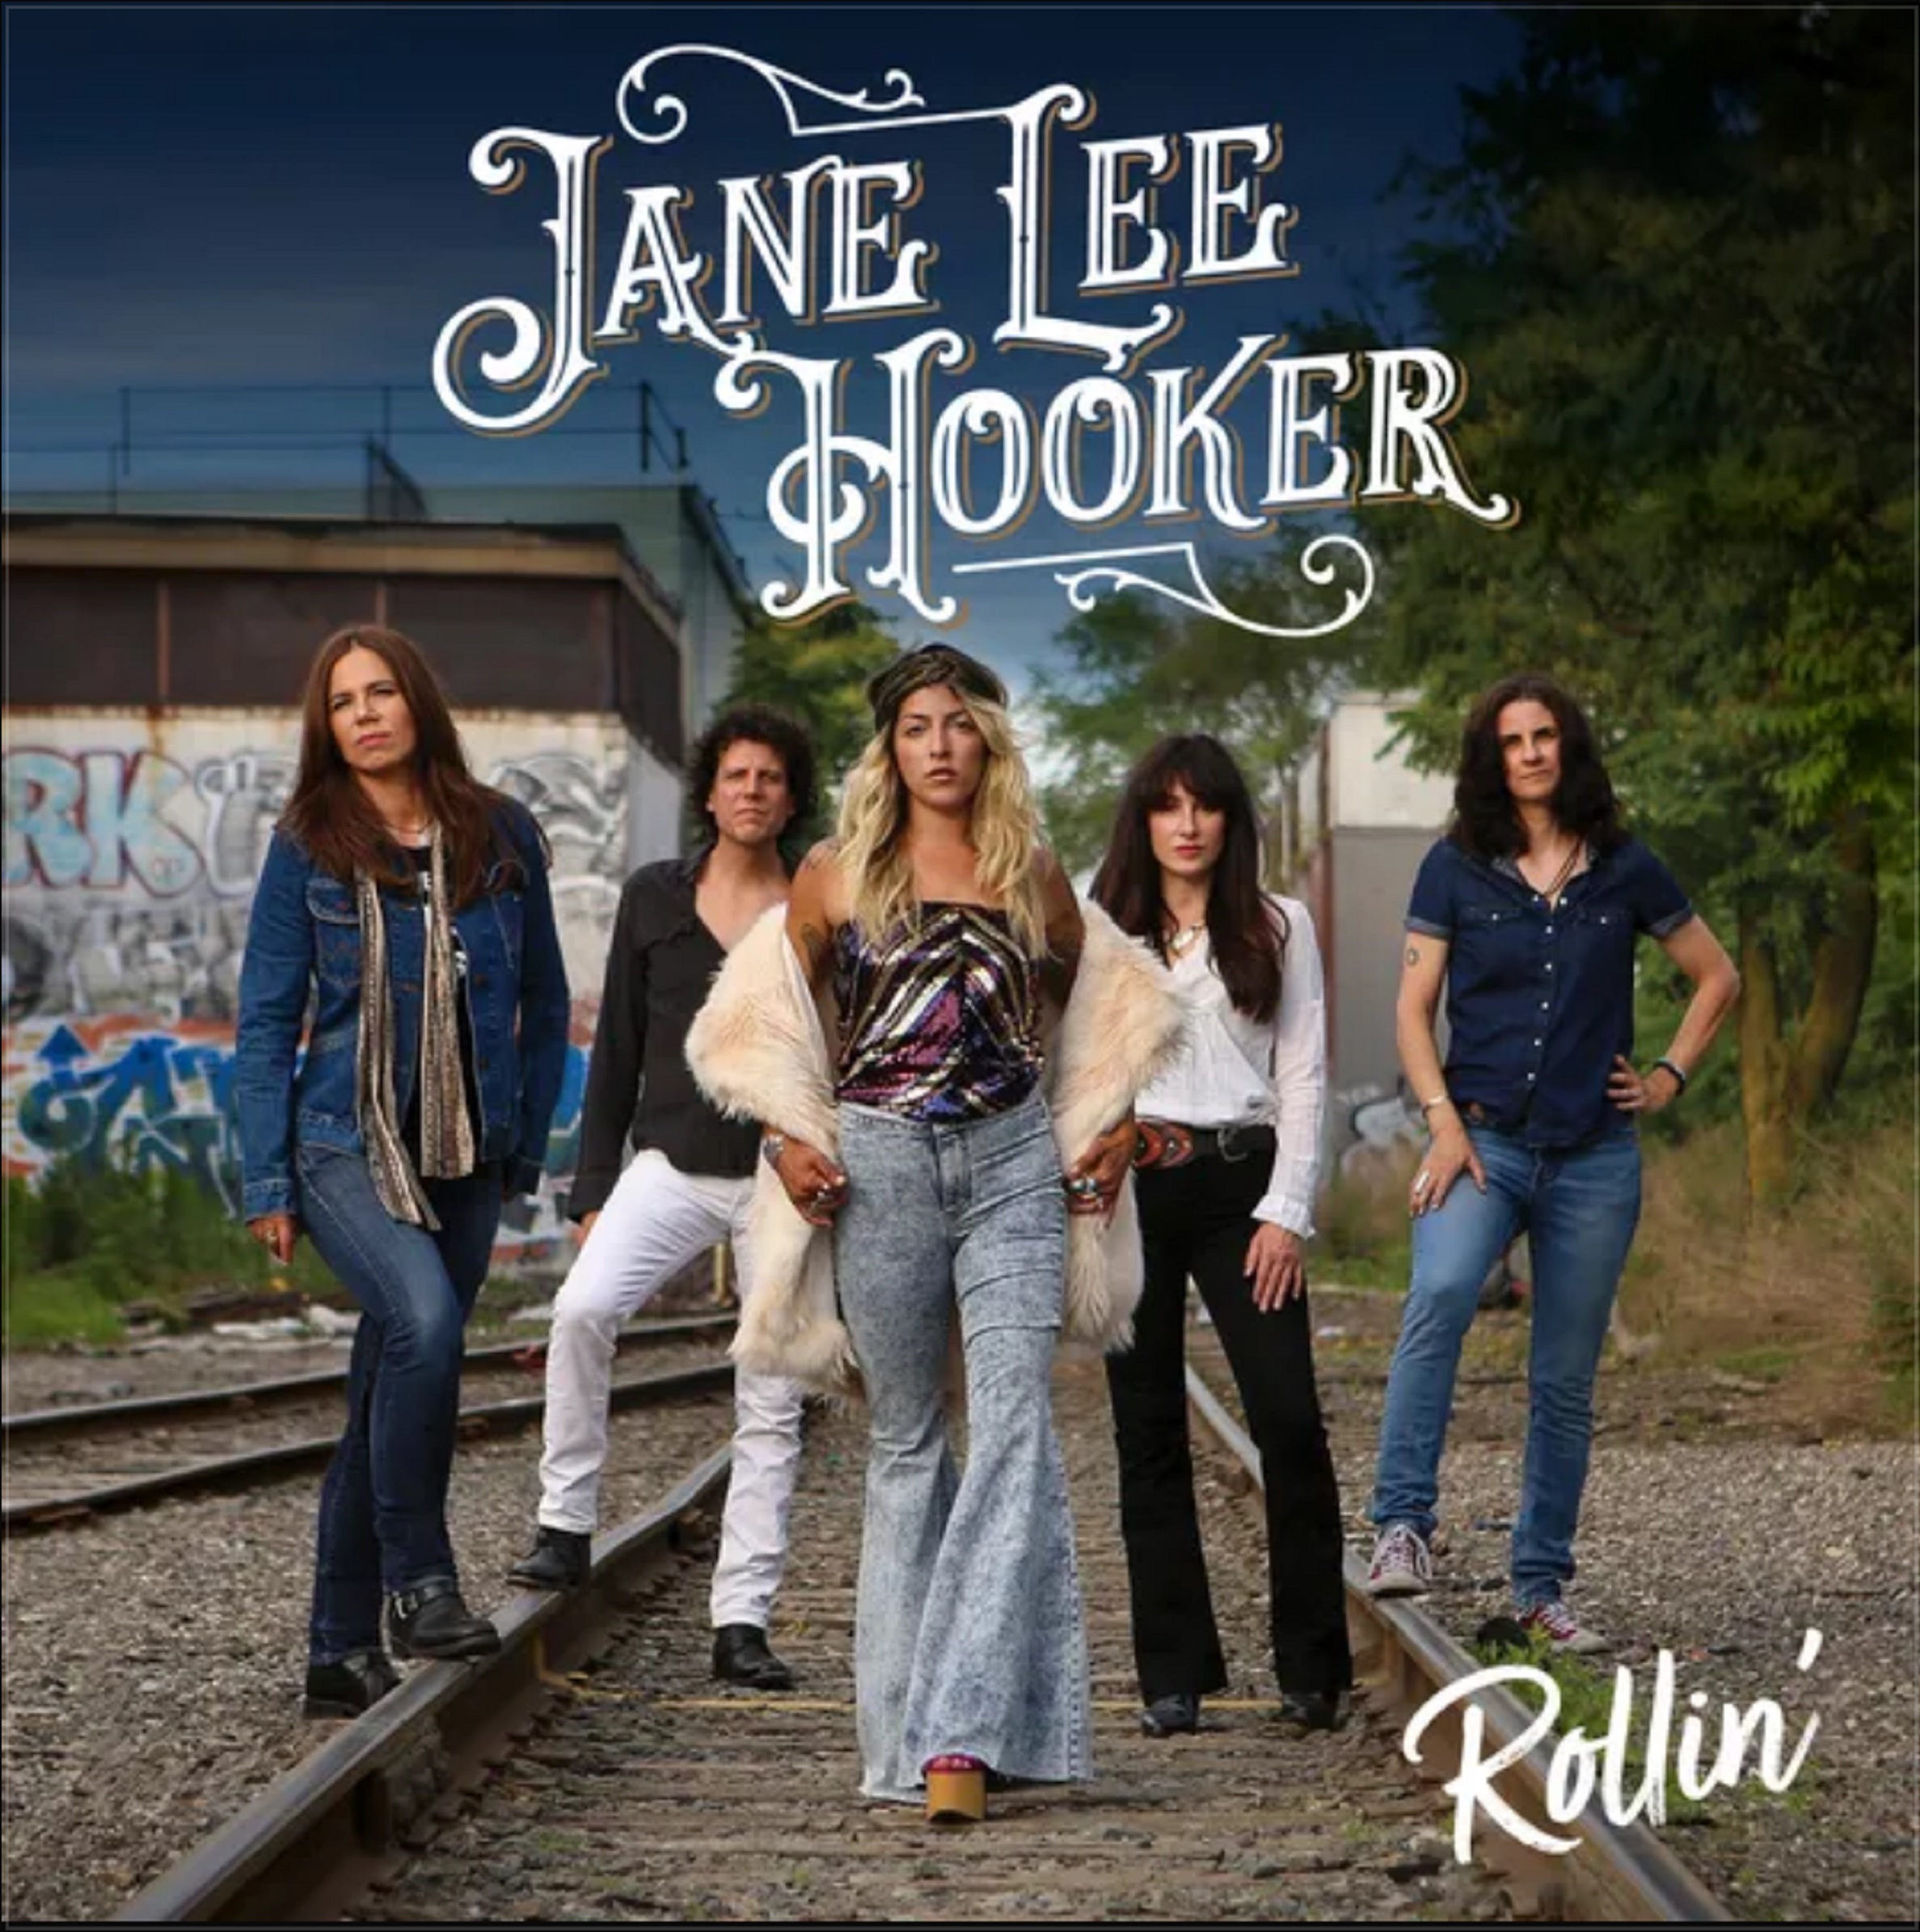 Jane Lee Hooker's Rollin' Out Now